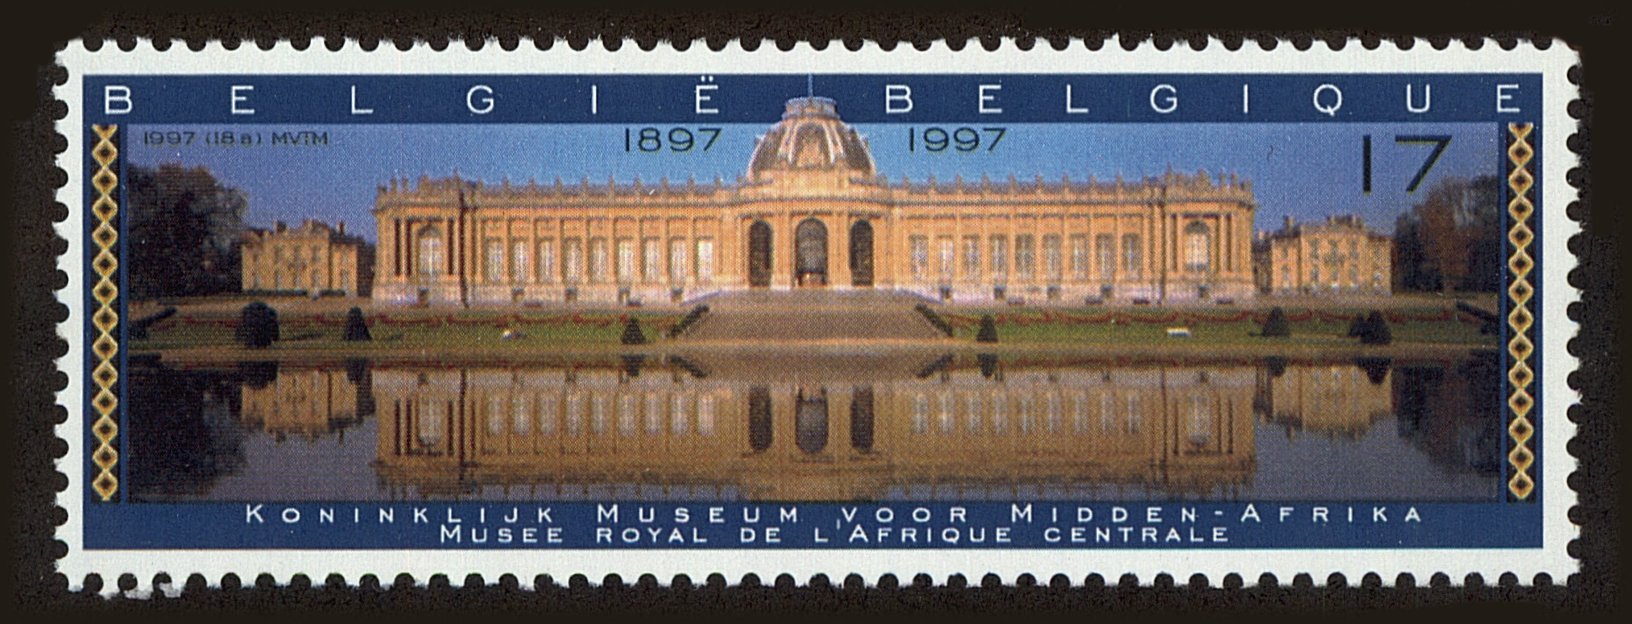 Front view of Belgium 1673 collectors stamp